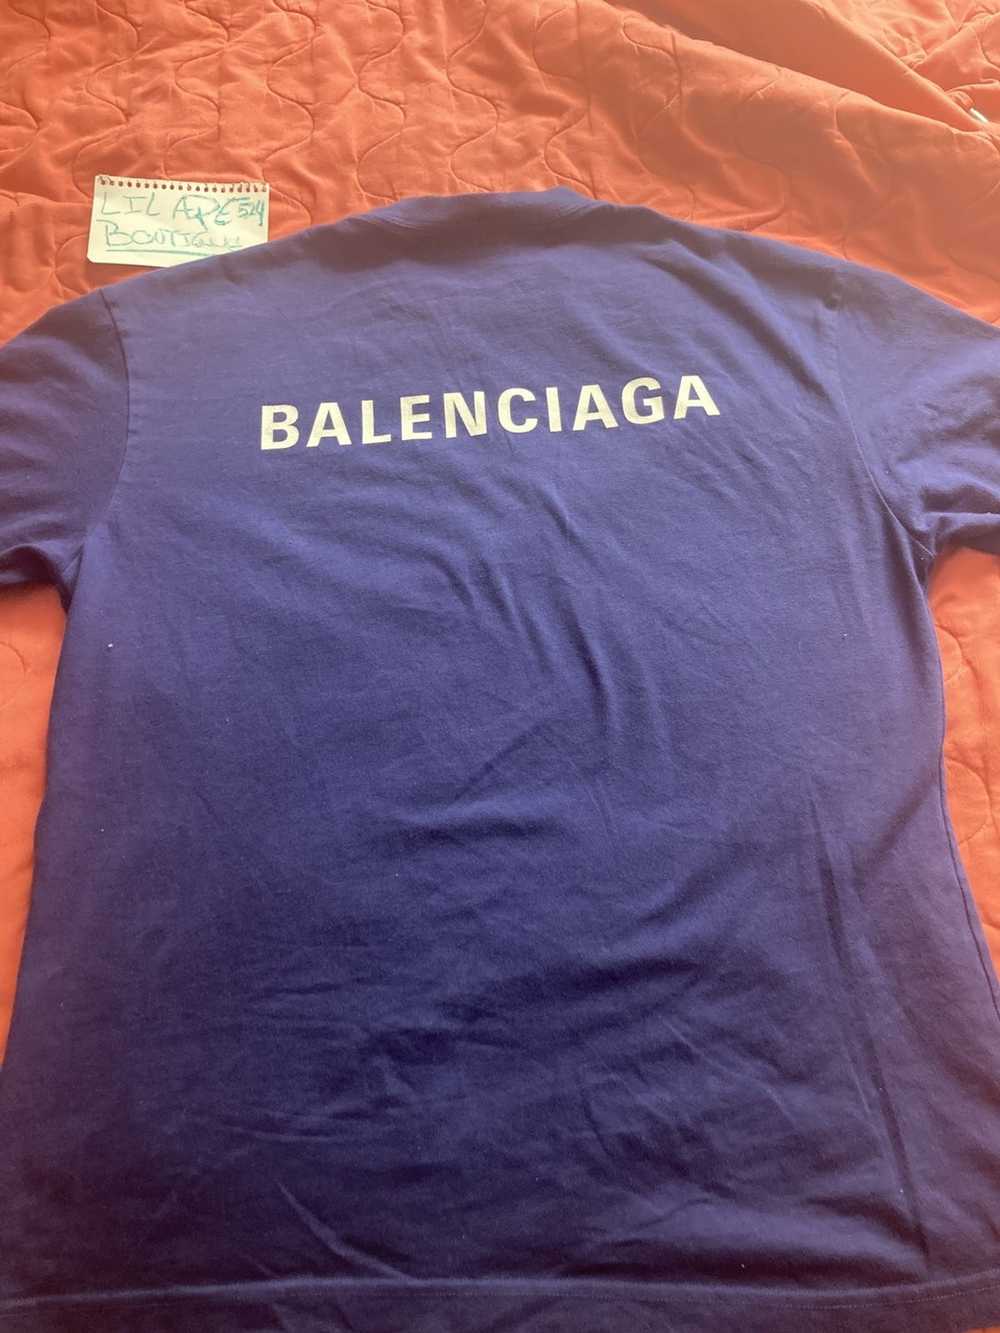 Balenciaga Balenciaga small logo oversized T-shirt - image 2